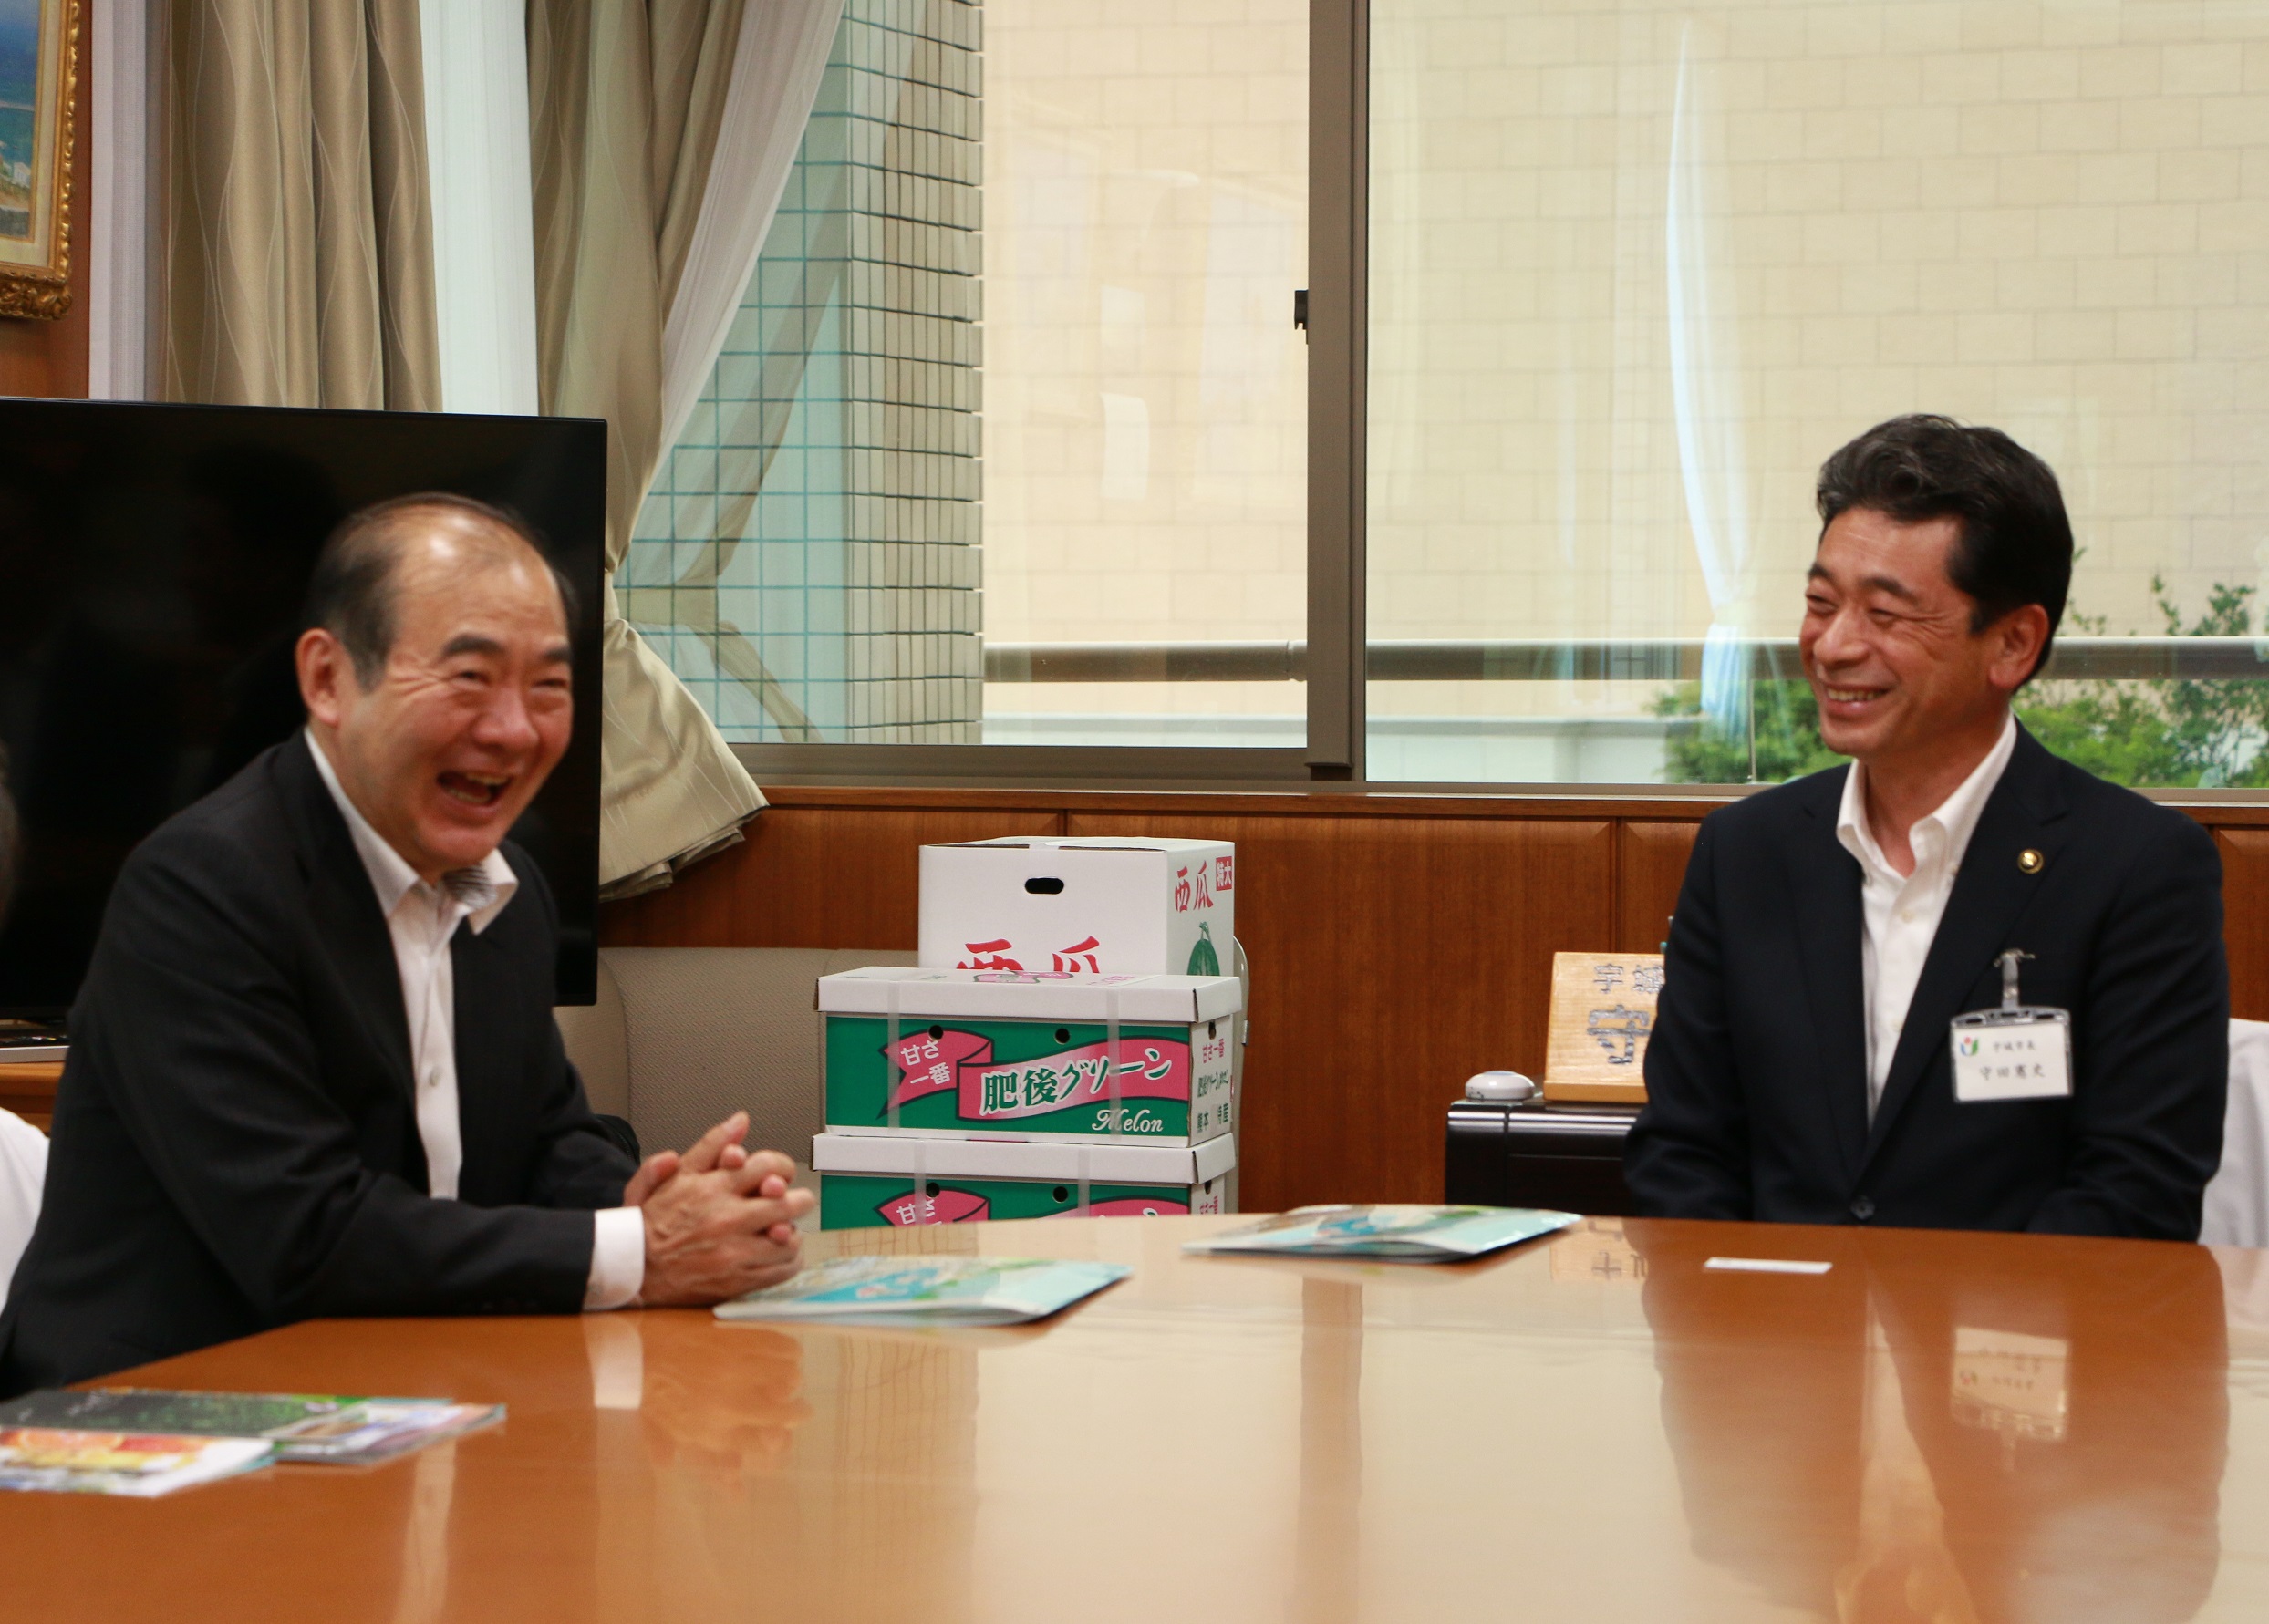 意見交換会を行う陳総領事と守田市長の写真